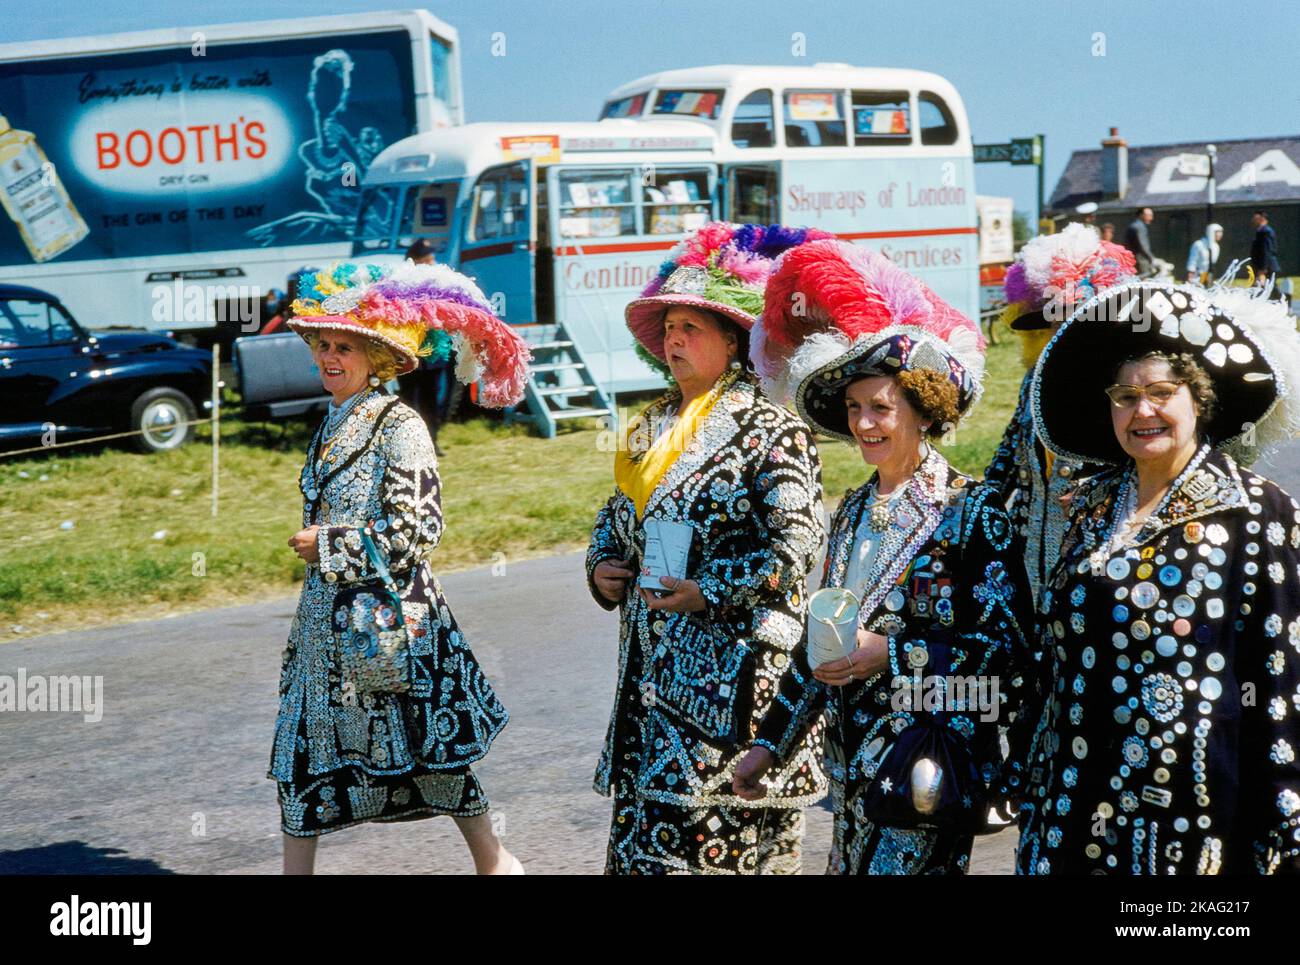 Cuatro mujeres que llevaban chaquetas y faldas con botones de diferentes tamaños cosidos sobre ellas para asistir a English Derby, Epsom Downs Racecourse, Epsom, Surrey, Inglaterra, UK, Toni Frissell Collection, 3 de junio de 1959 Foto de stock